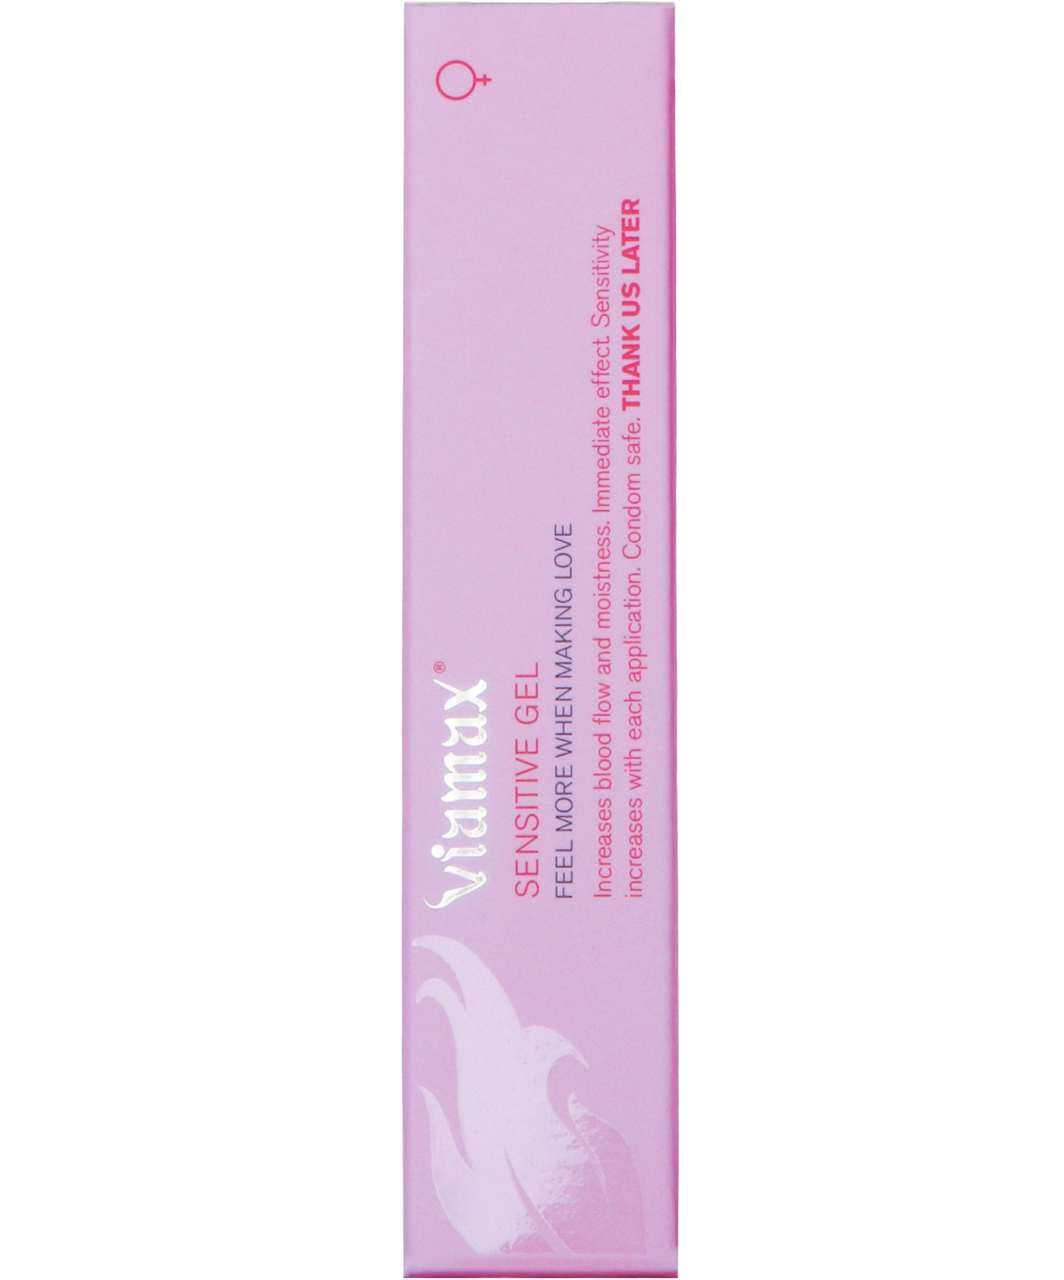 Viamax gels jutības veicināšanai sievietēm (15 / 50 ml)